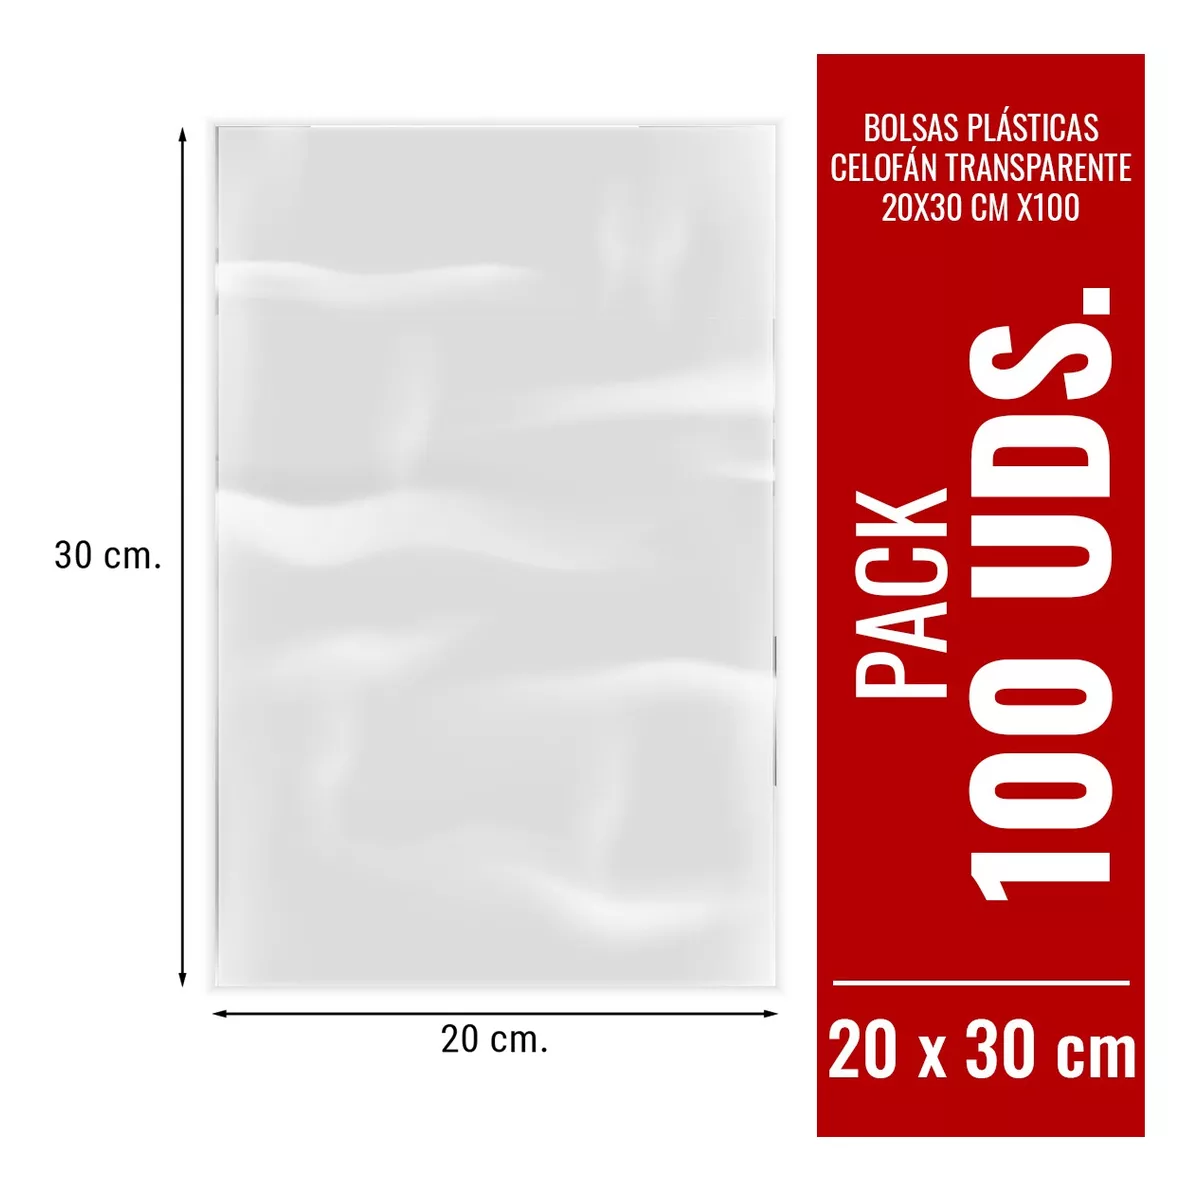 Bolsas Plásticas Celofán Transparente 20x30 Cm X100